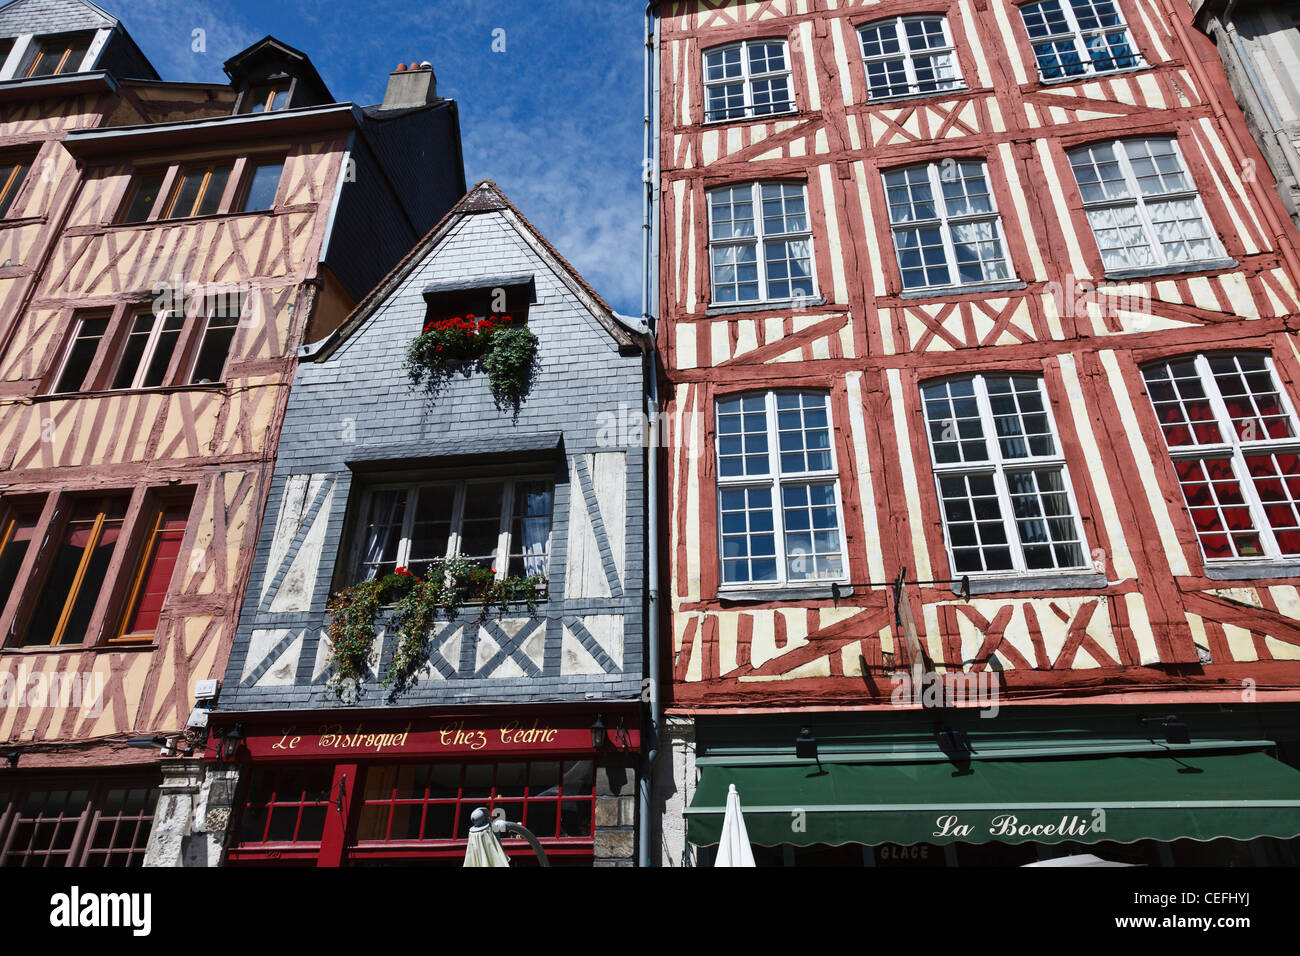 Cité médiévale à colombages dans la rue Martainville, Rouen, Normandie, France Banque D'Images